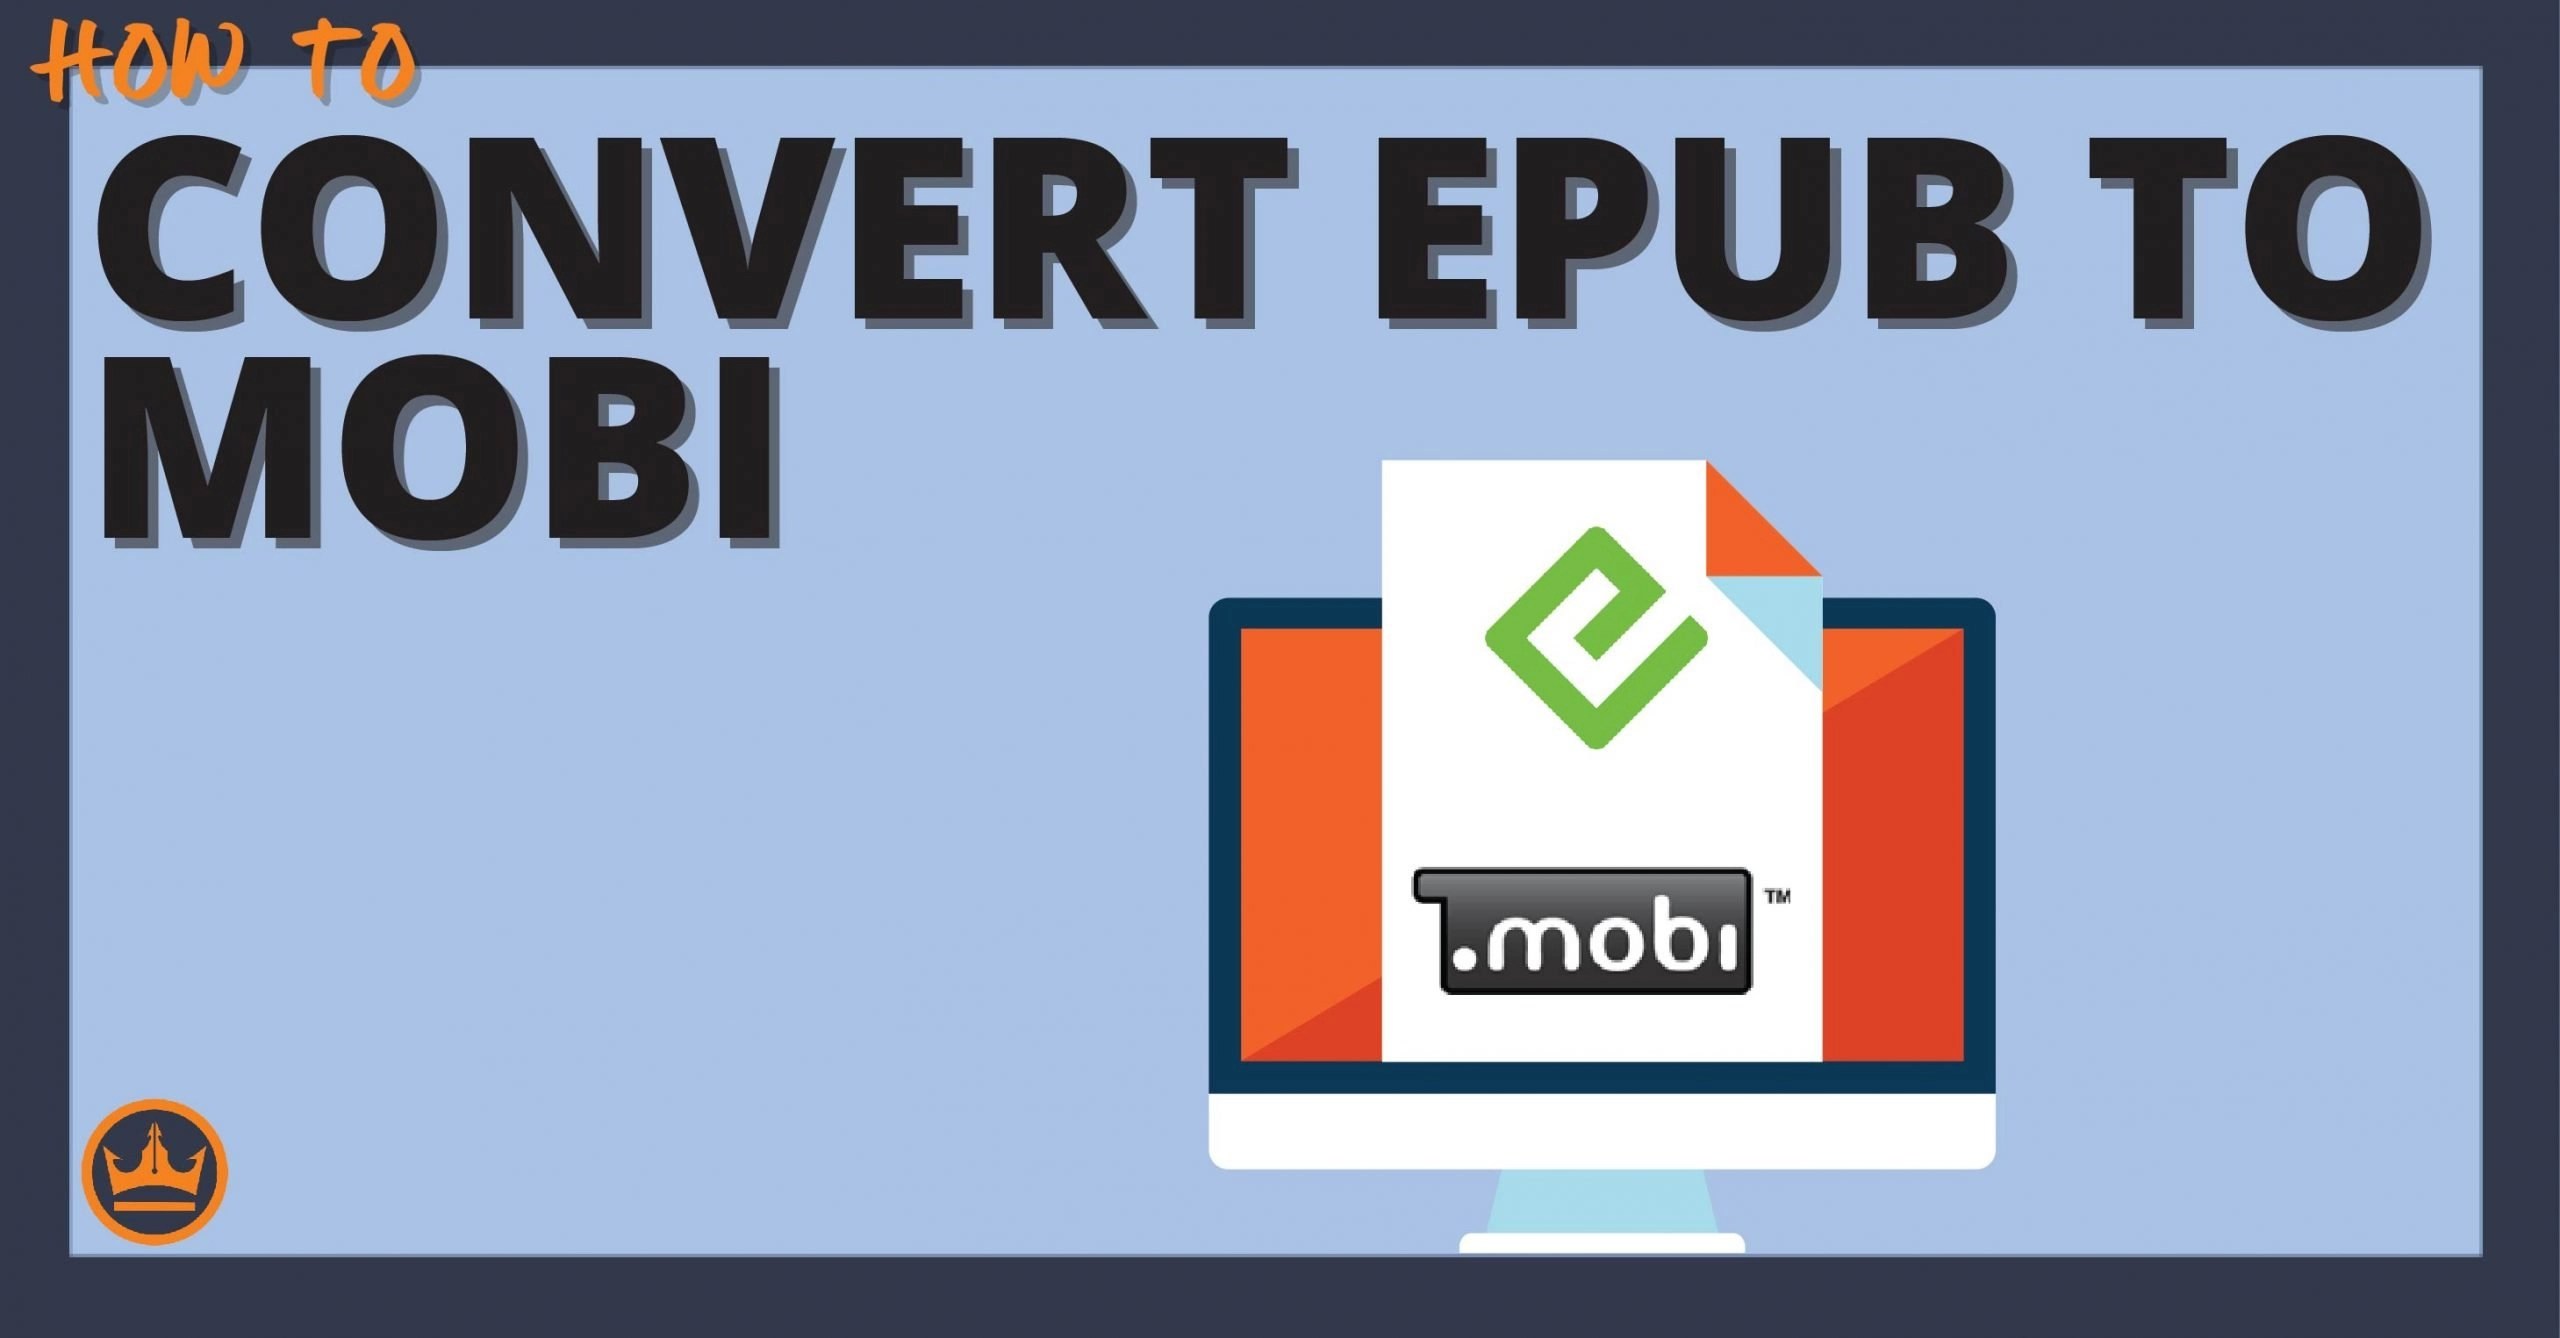 How To Convert ePub To Mobi